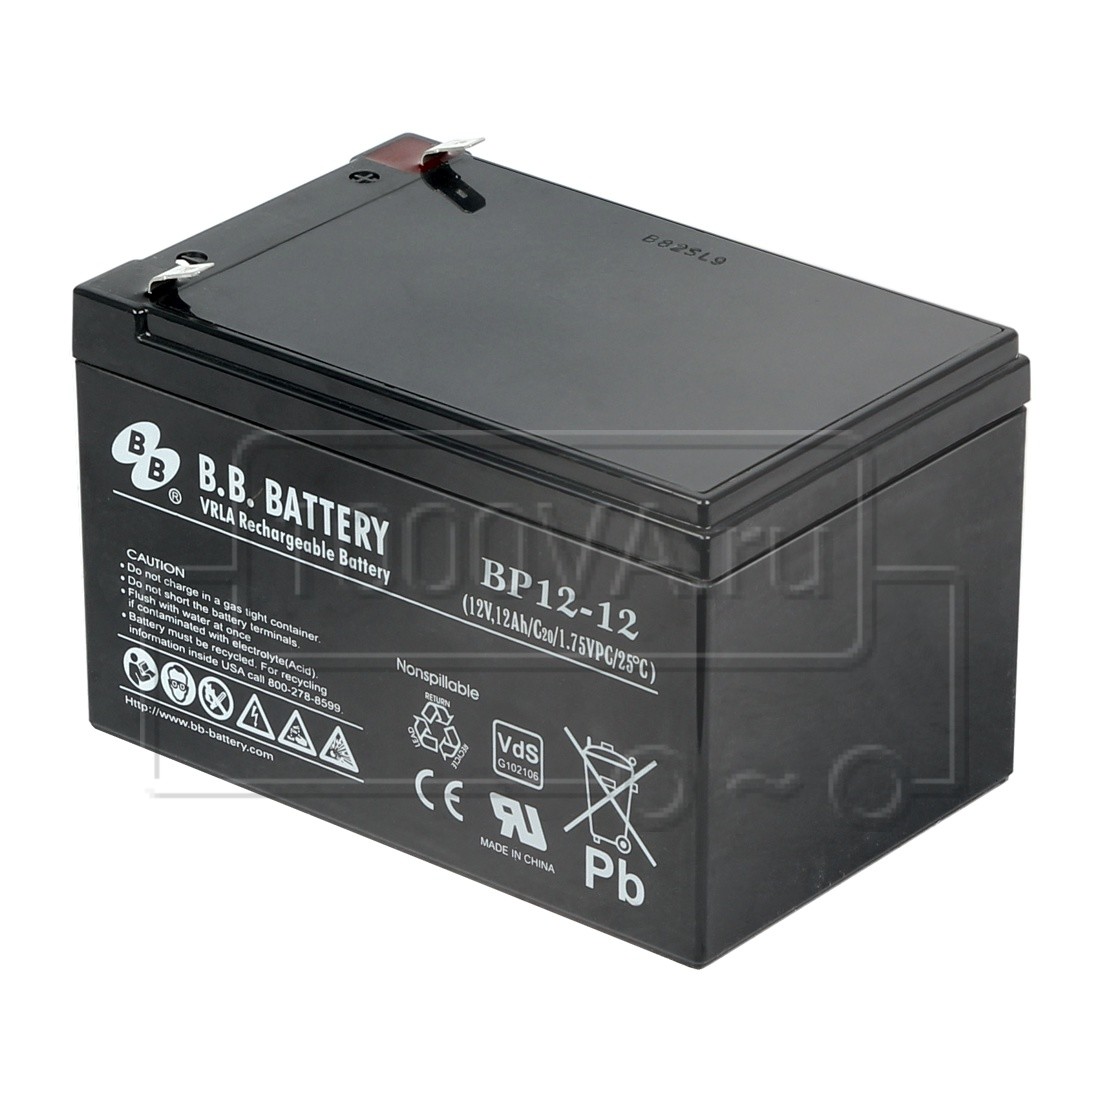 Ptk battery 12 12. Аккумулятор BB Battery BP 5-12. Аккумулятор BB Battery hrl9-12. Аккумуляторная батарея BB Battery bc12-12. Батарея аккумуляторная PTK-Battery 12-7 ПОЖТЕХКАБЕЛЬ.